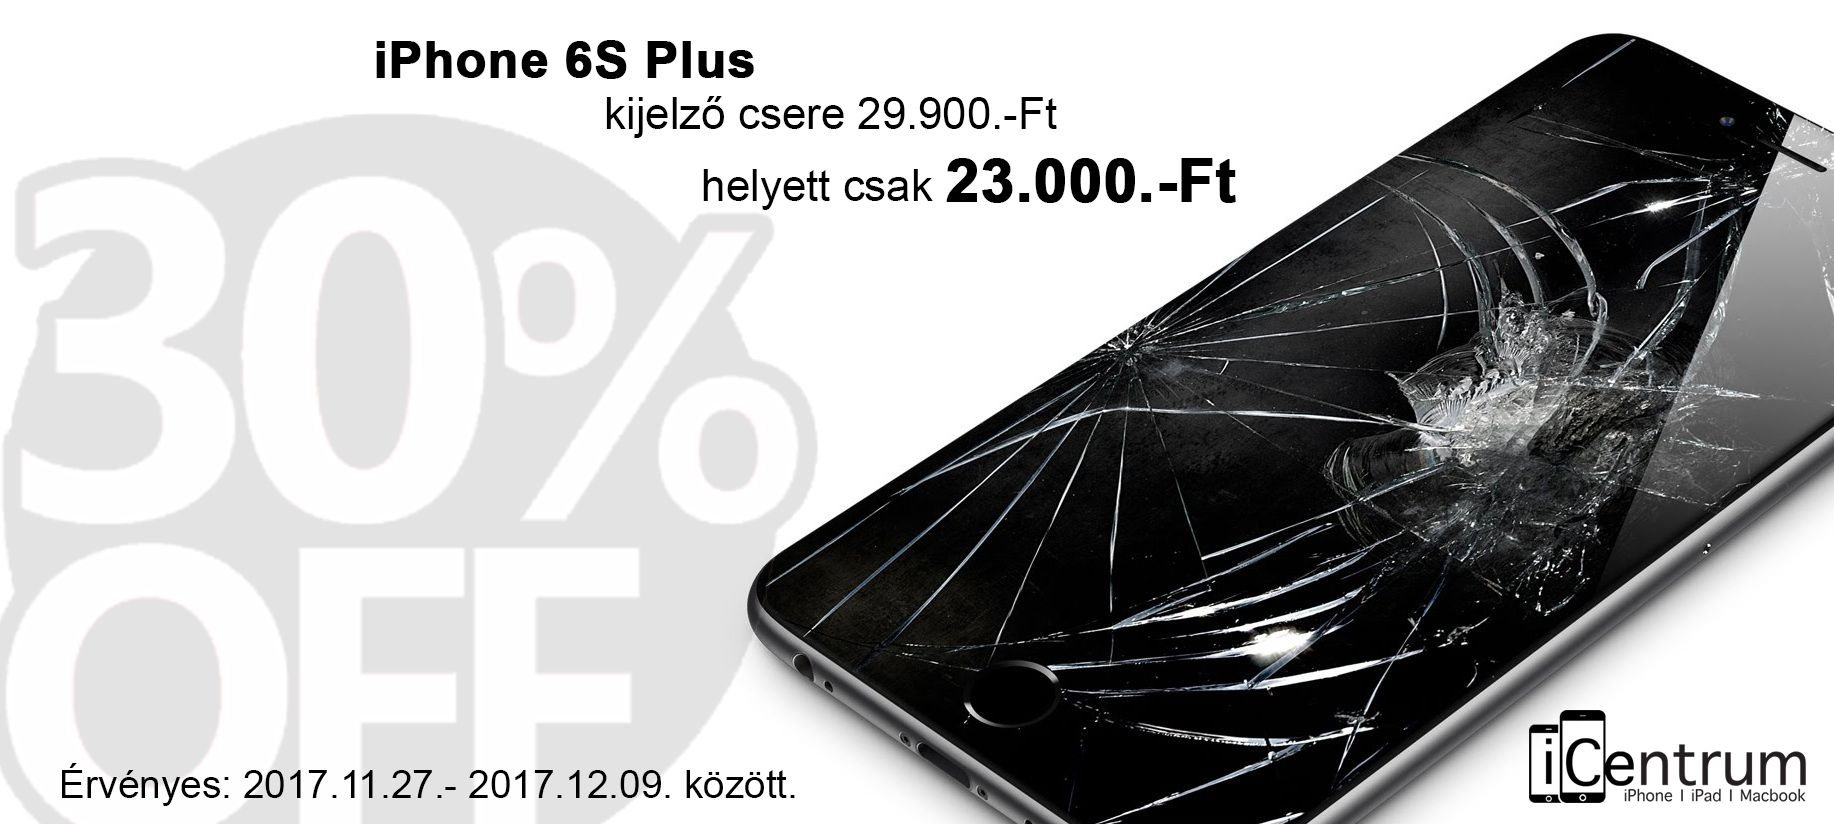 iPhone 6S Plus kijelző csere olcsóbb lett az iCentrumnál